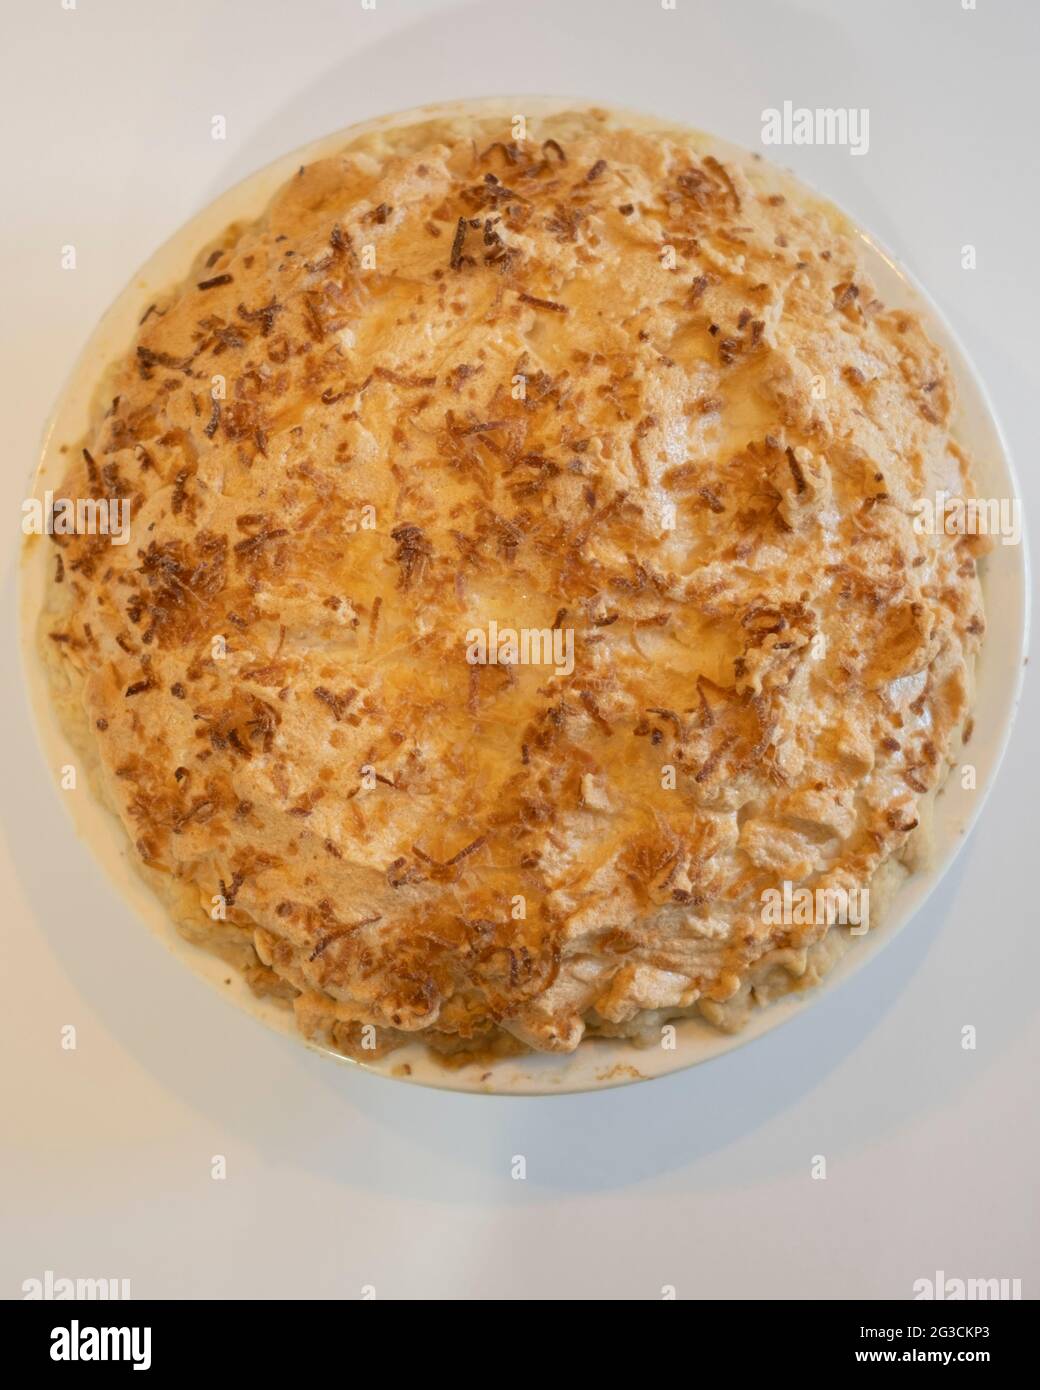 Una tarta de crema de merengue de coco dorado y horneada entera vista desde arriba sobre un fondo blanco. EE.UU Foto de stock